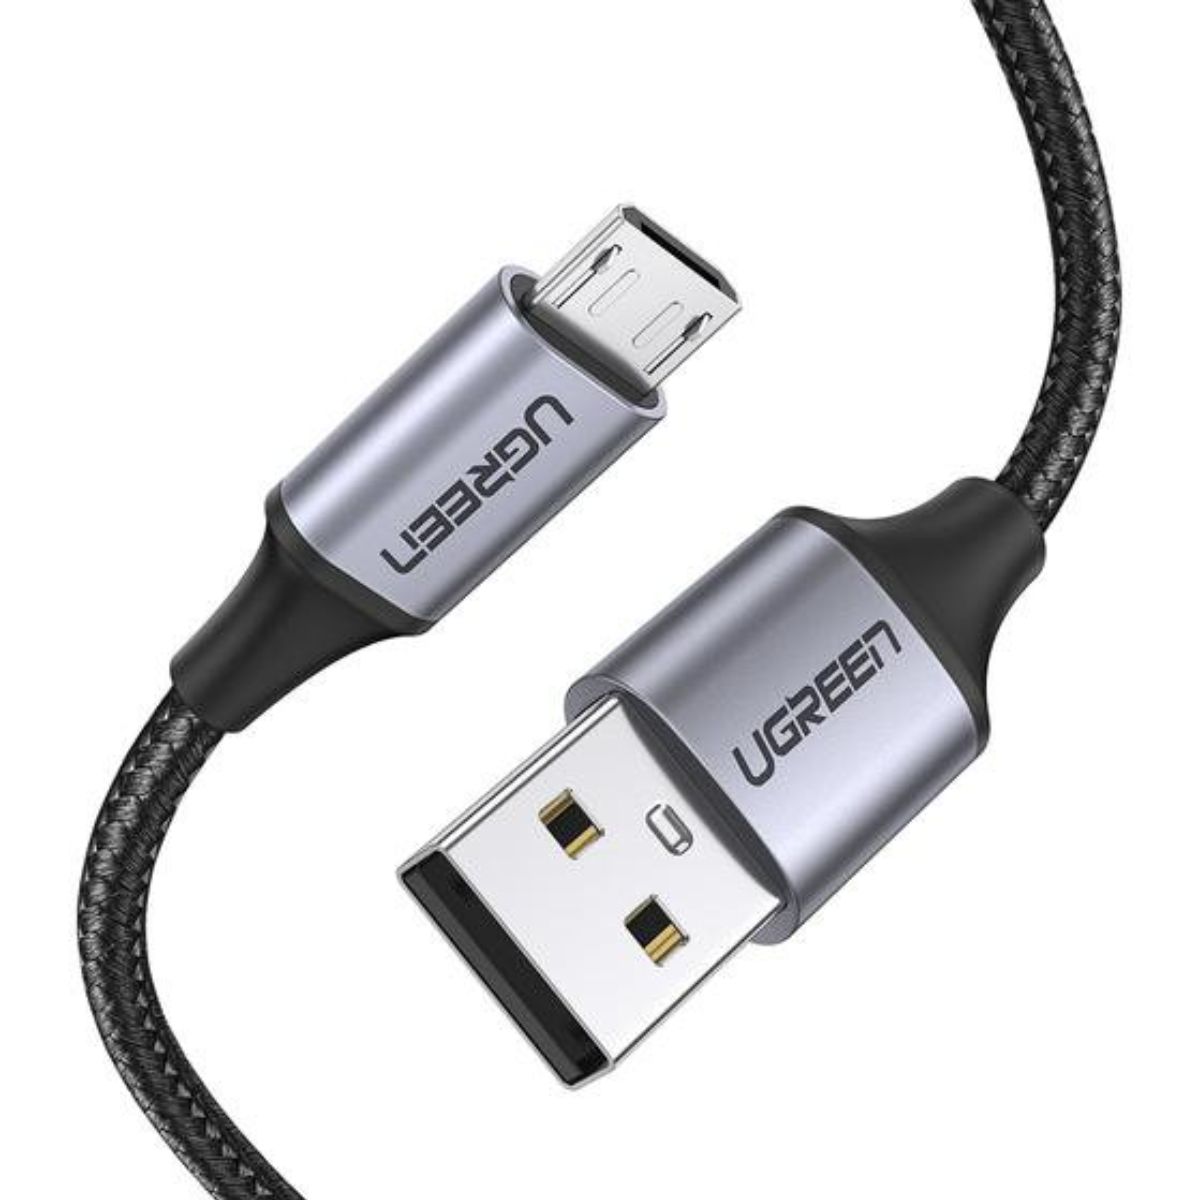 Cáp sạc nhanh Micro USB Ugreen 60403 US290 chiều dài 3m, dây cáp lõi đồng, vỏ nhựa PVC